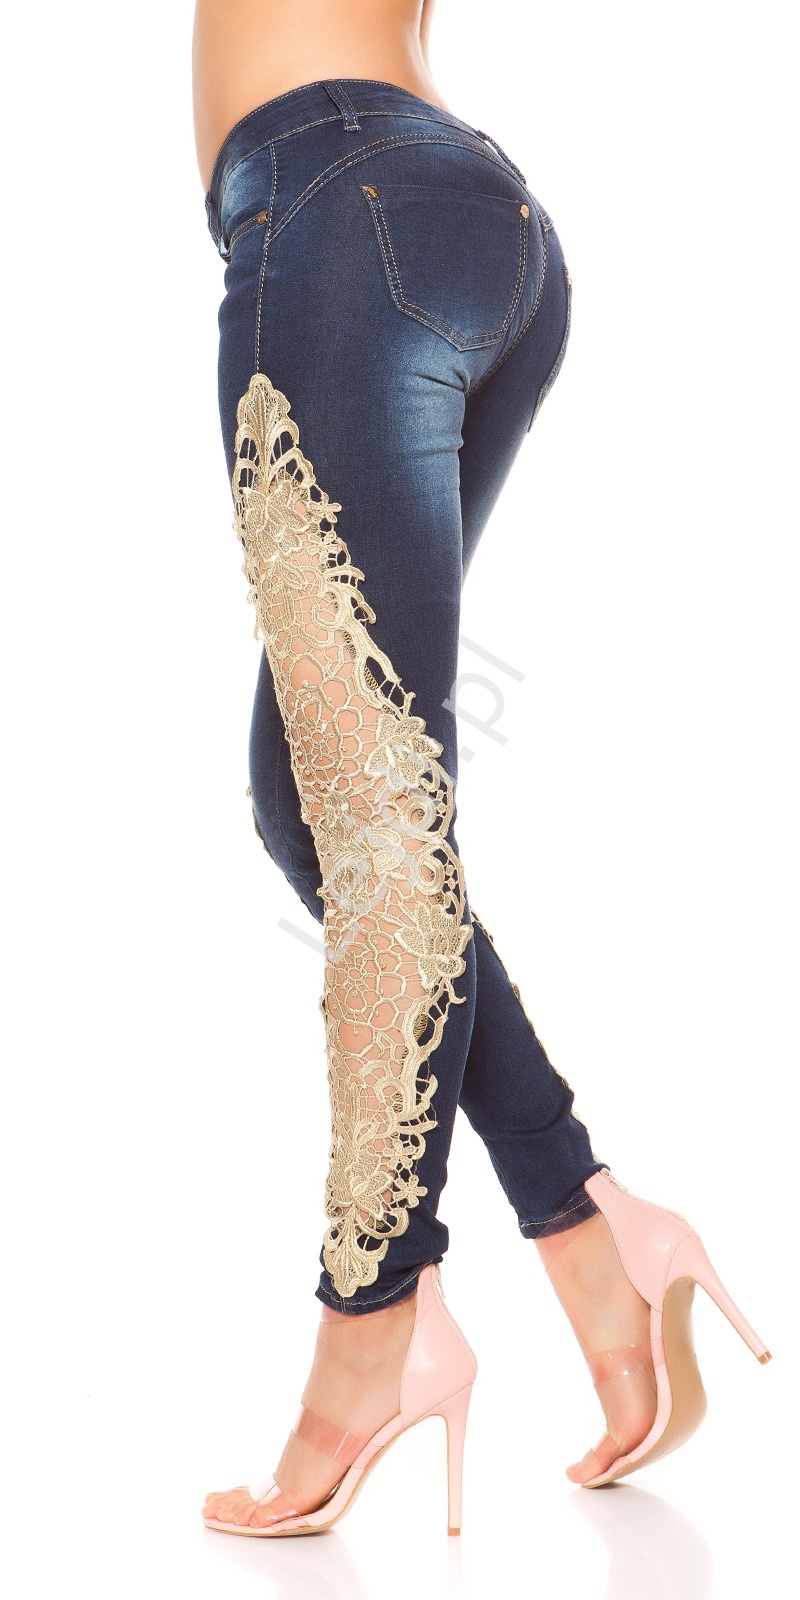 Jeansy modelujące sylwetkę ze złotą gipiurową koronką, biodrówki, wyszczuplające